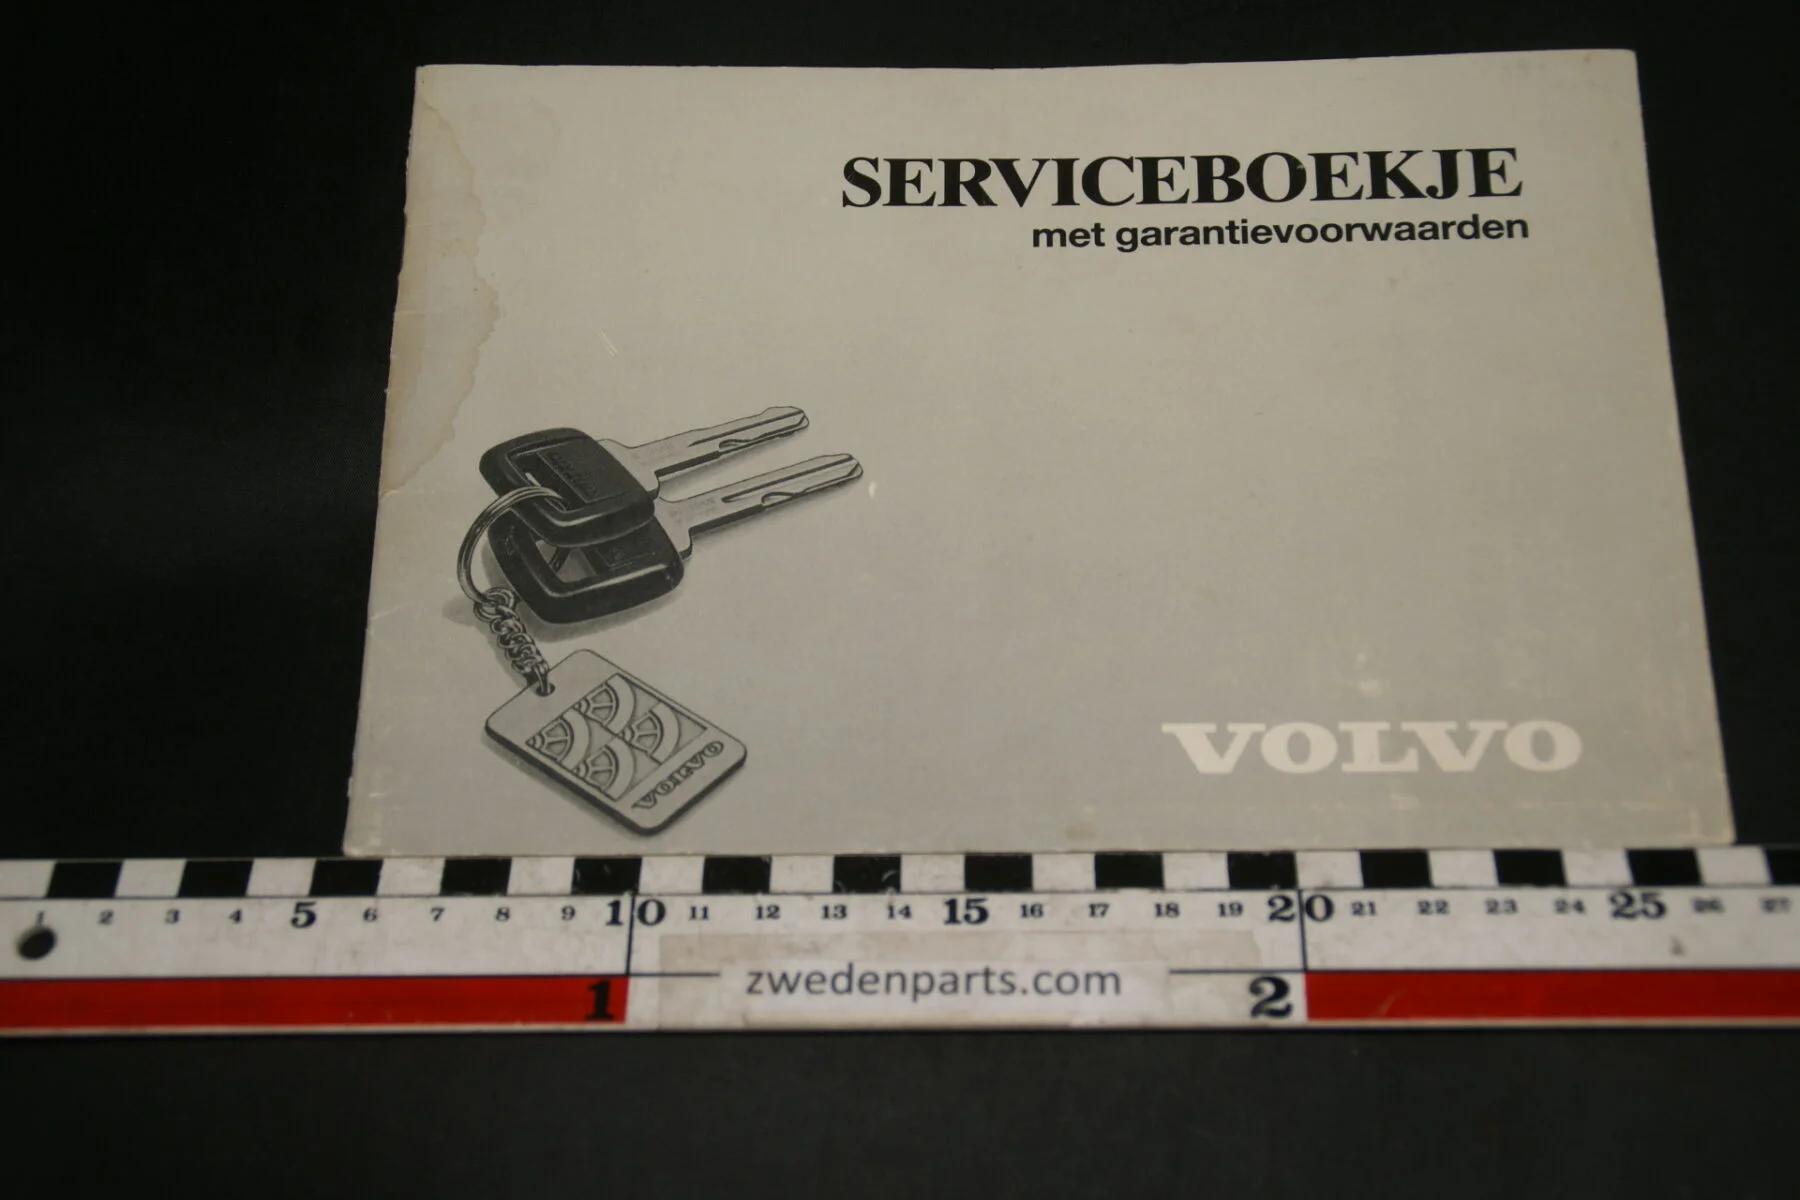 DSC02422 1987 Volvo serviceboekje TP86114.1